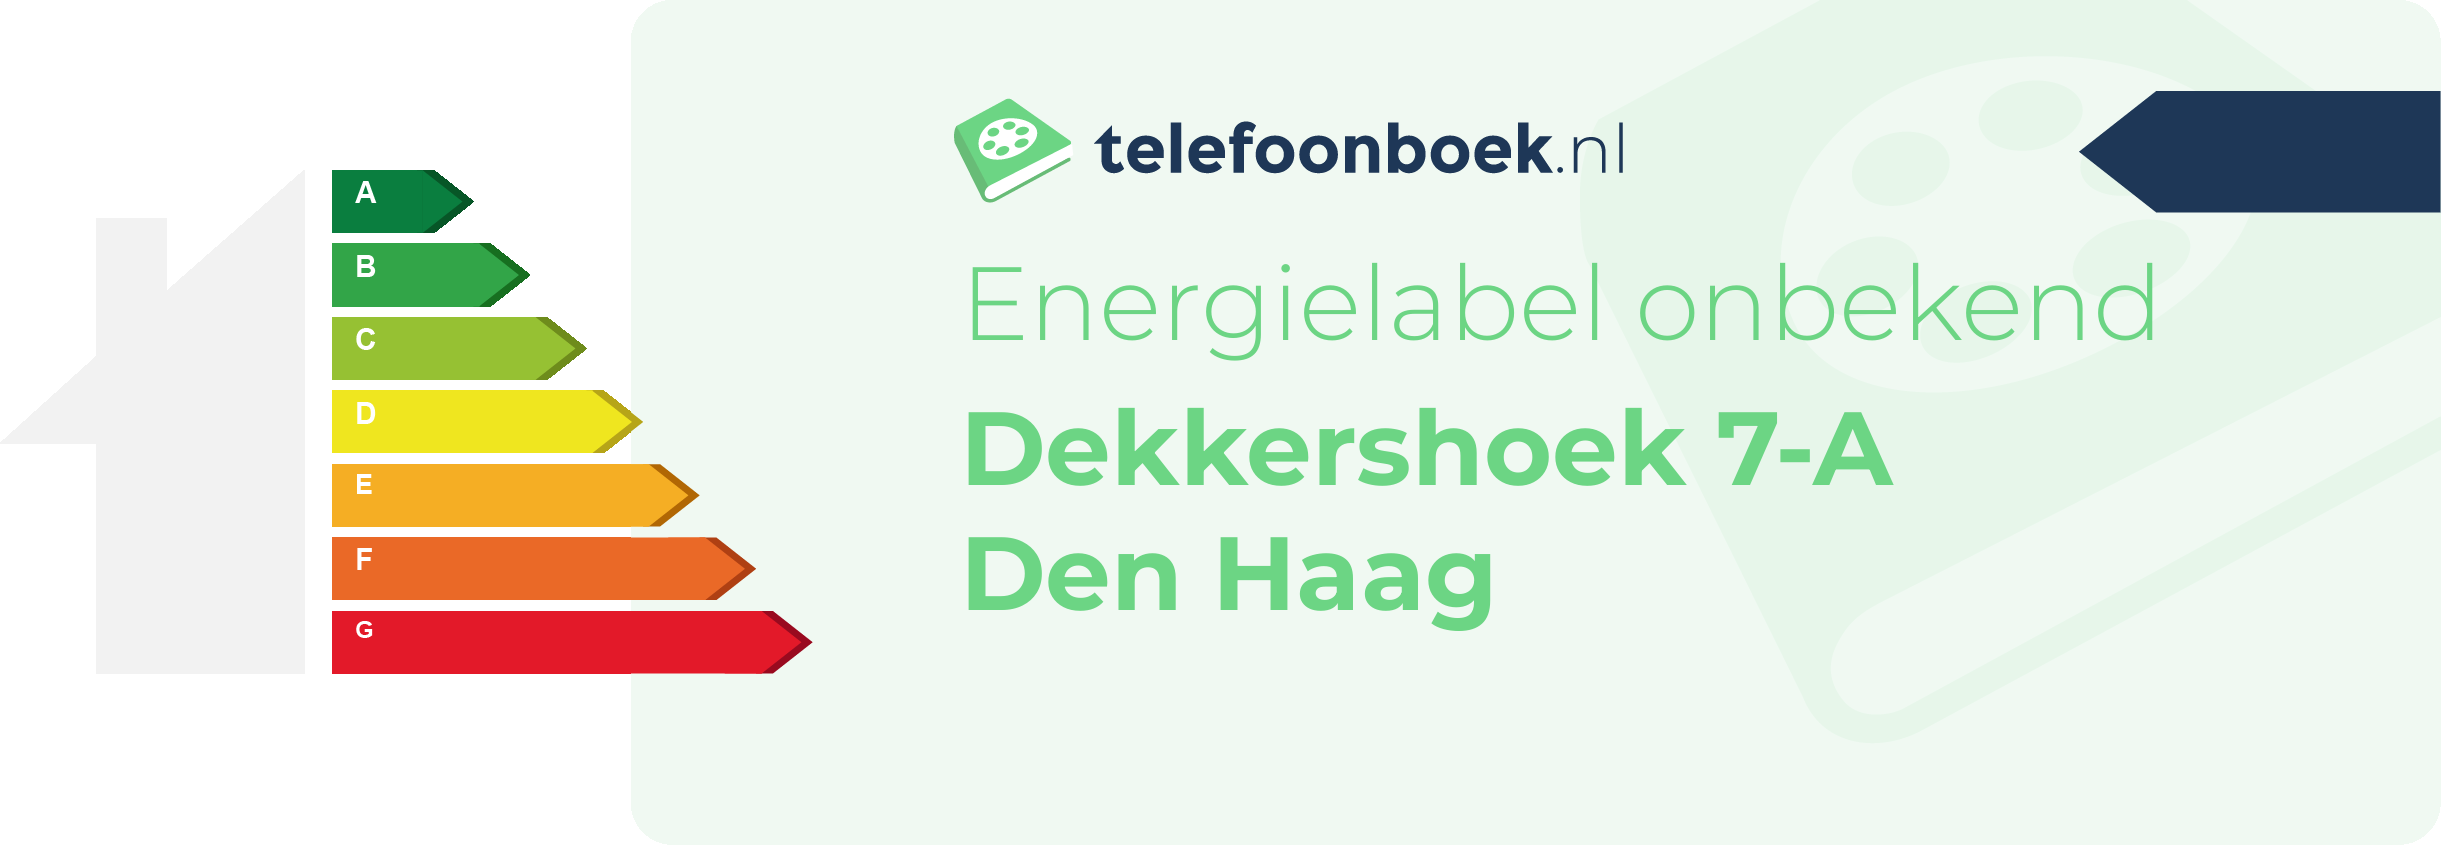 Energielabel Dekkershoek 7-A Den Haag